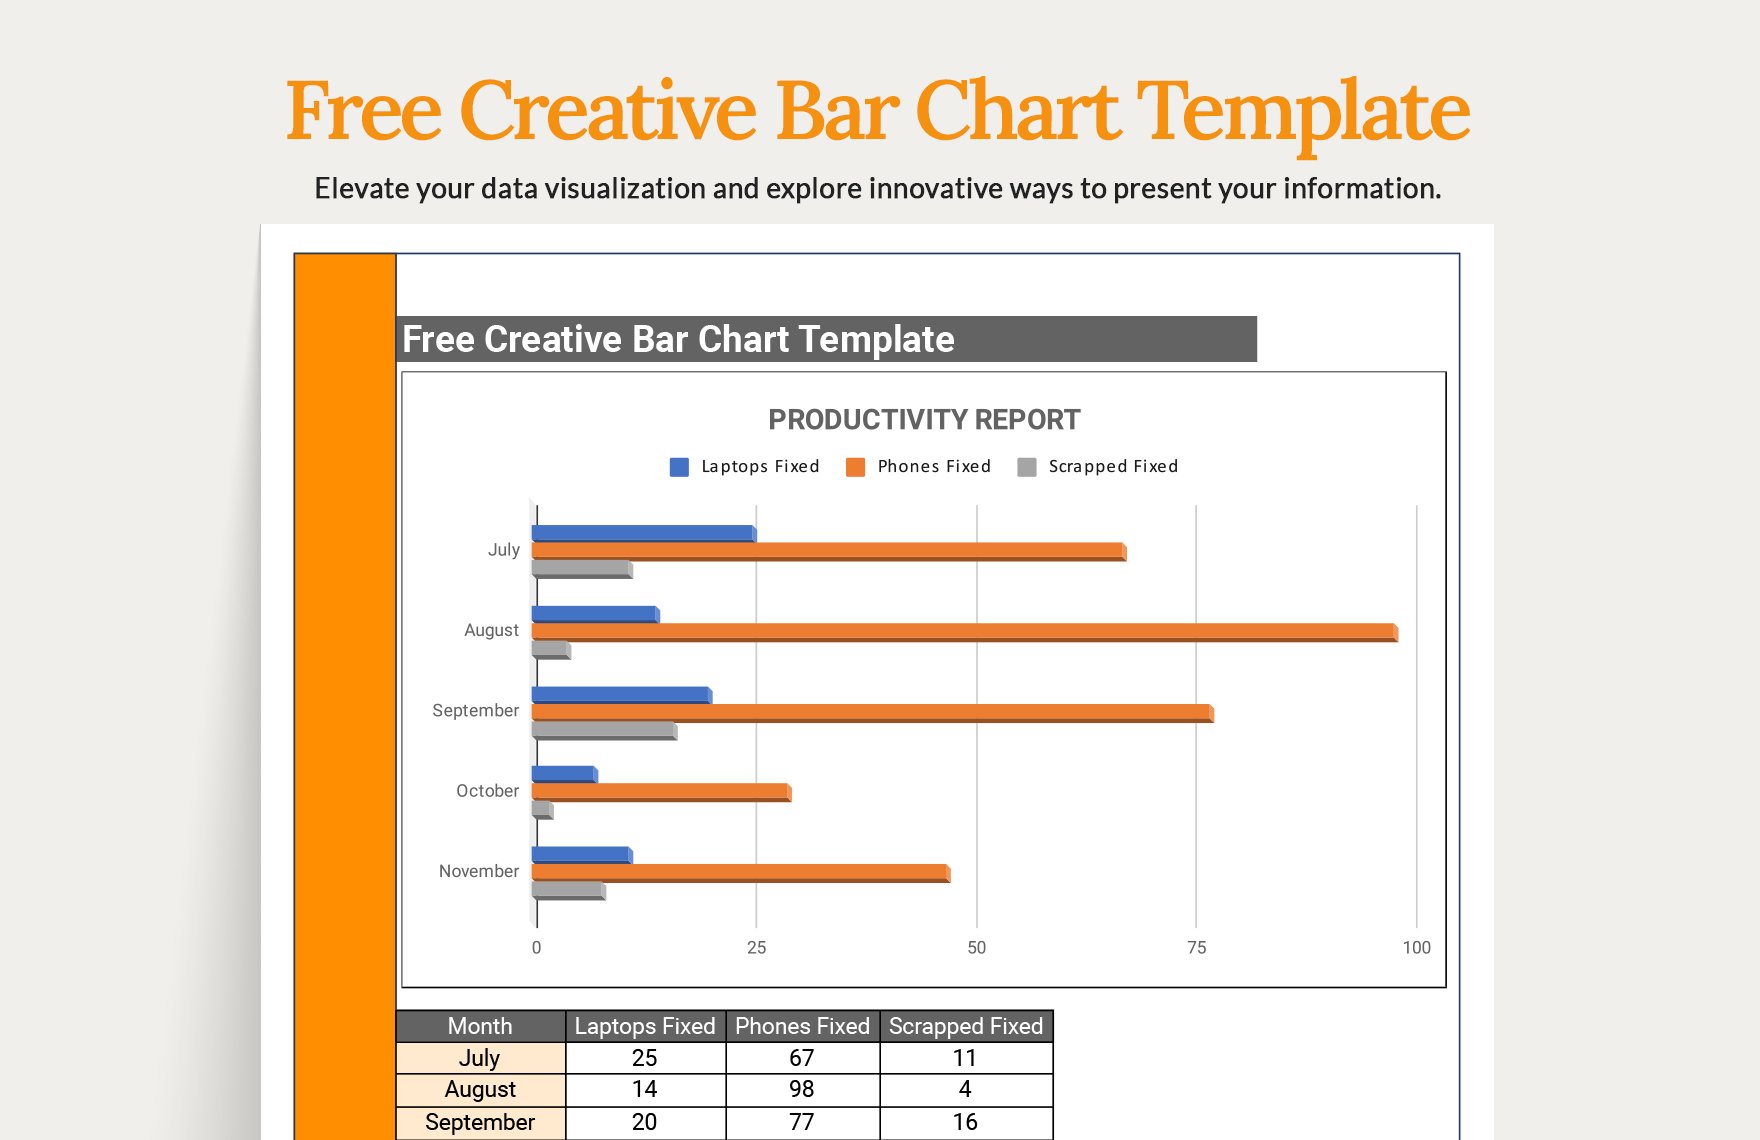 Creative Bar Chart Template